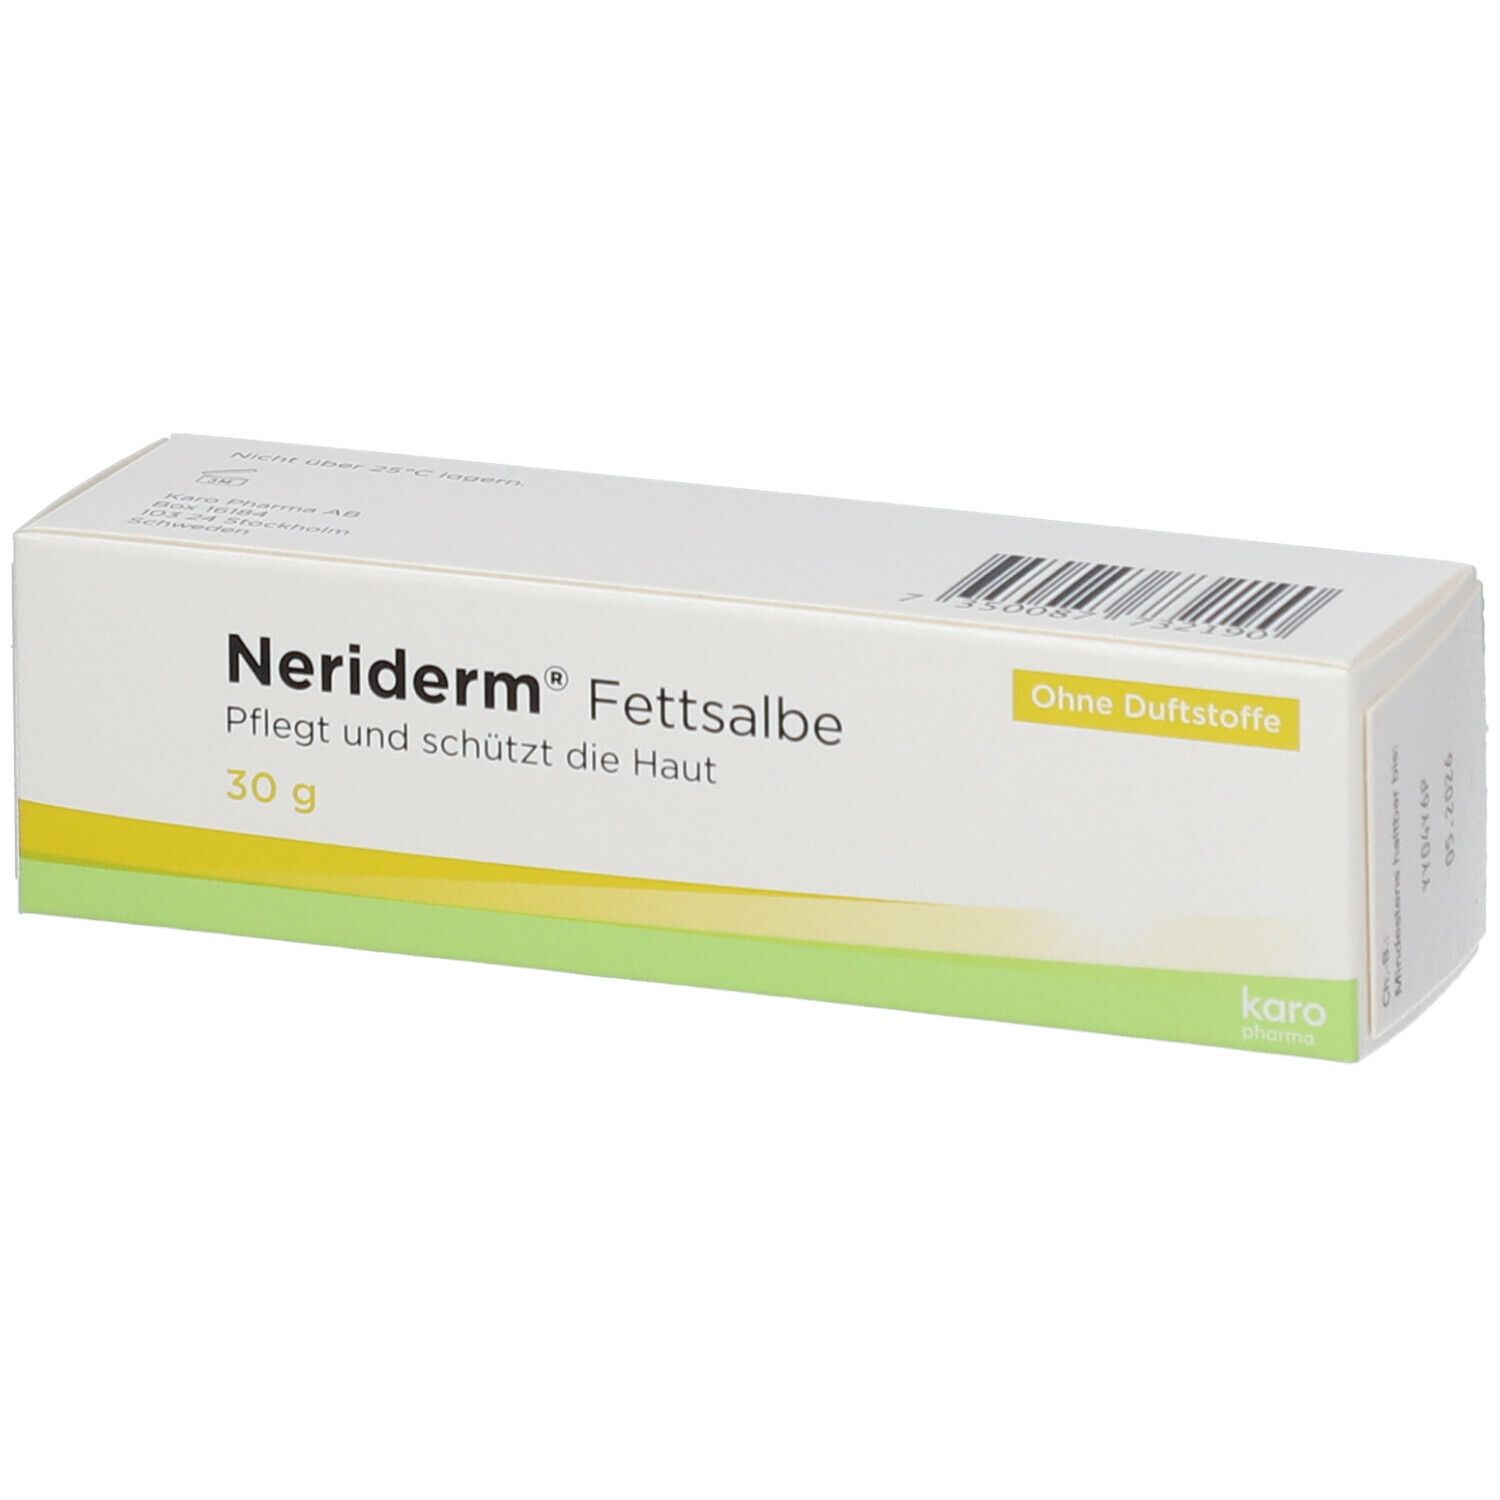 Image of Neriderm® Fettsalbe